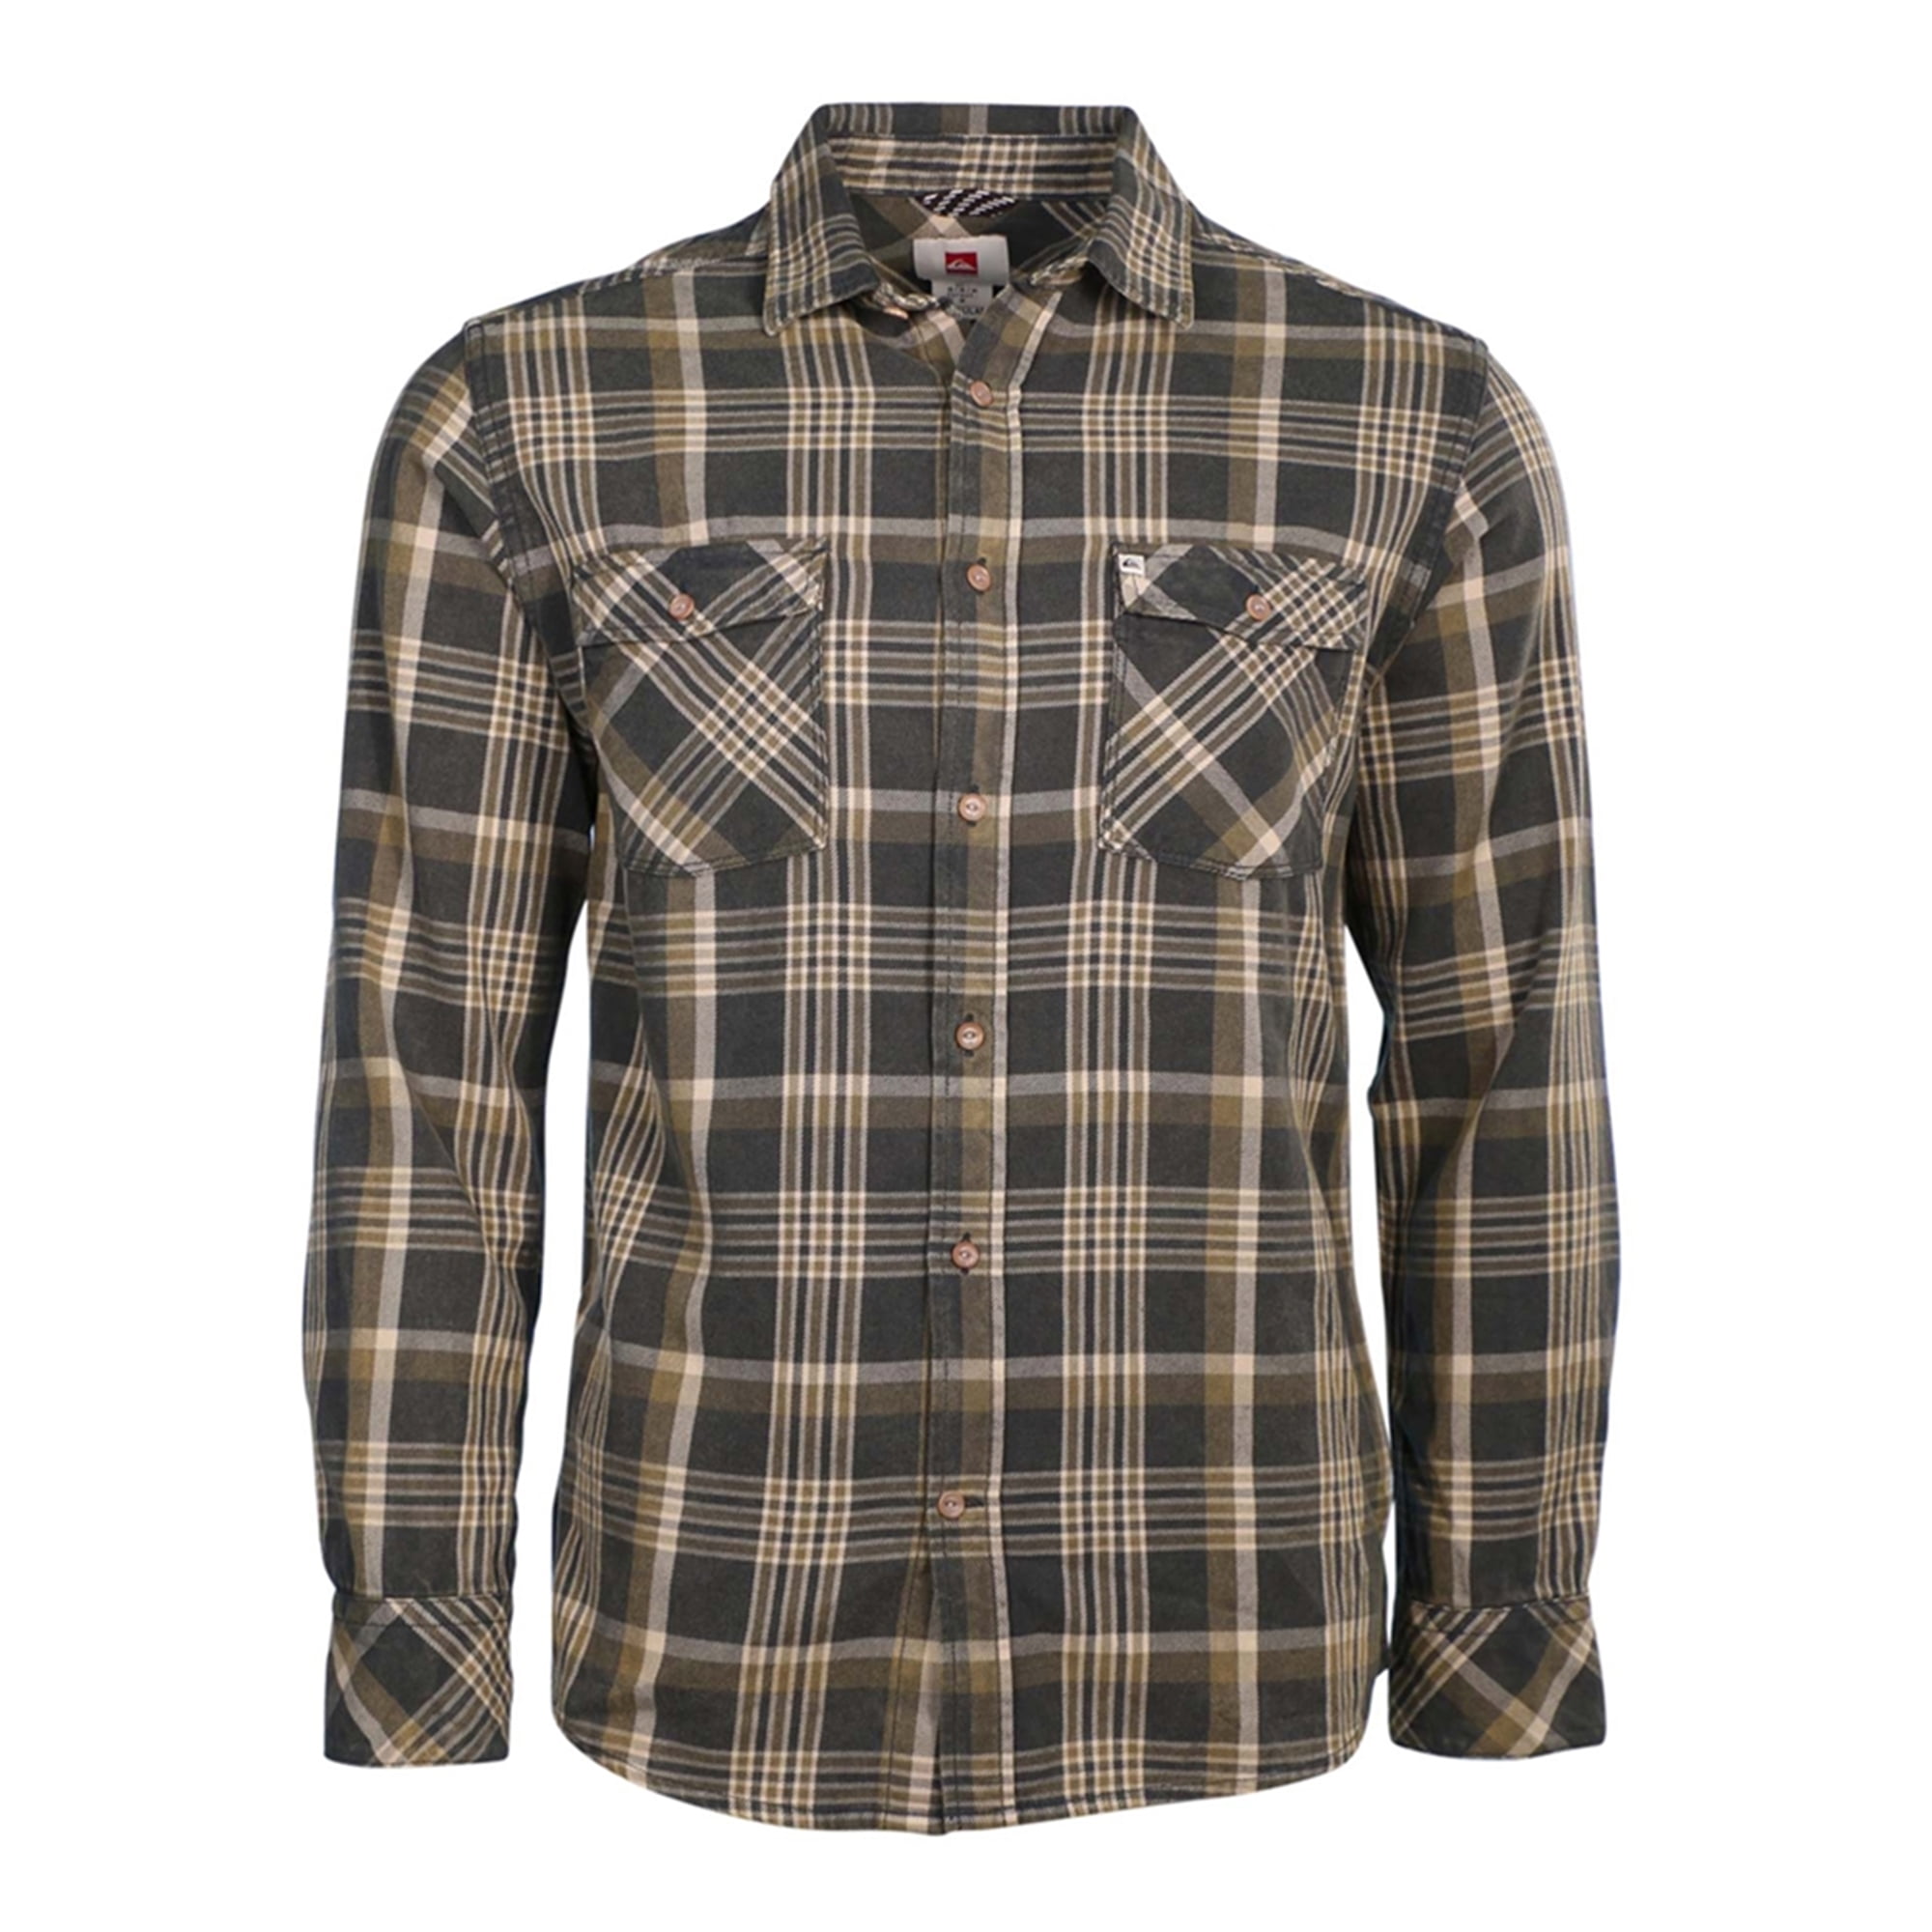 Quiksilver - Quiksilver Mens Flannel Plaid Button Up Shirt - Walmart ...